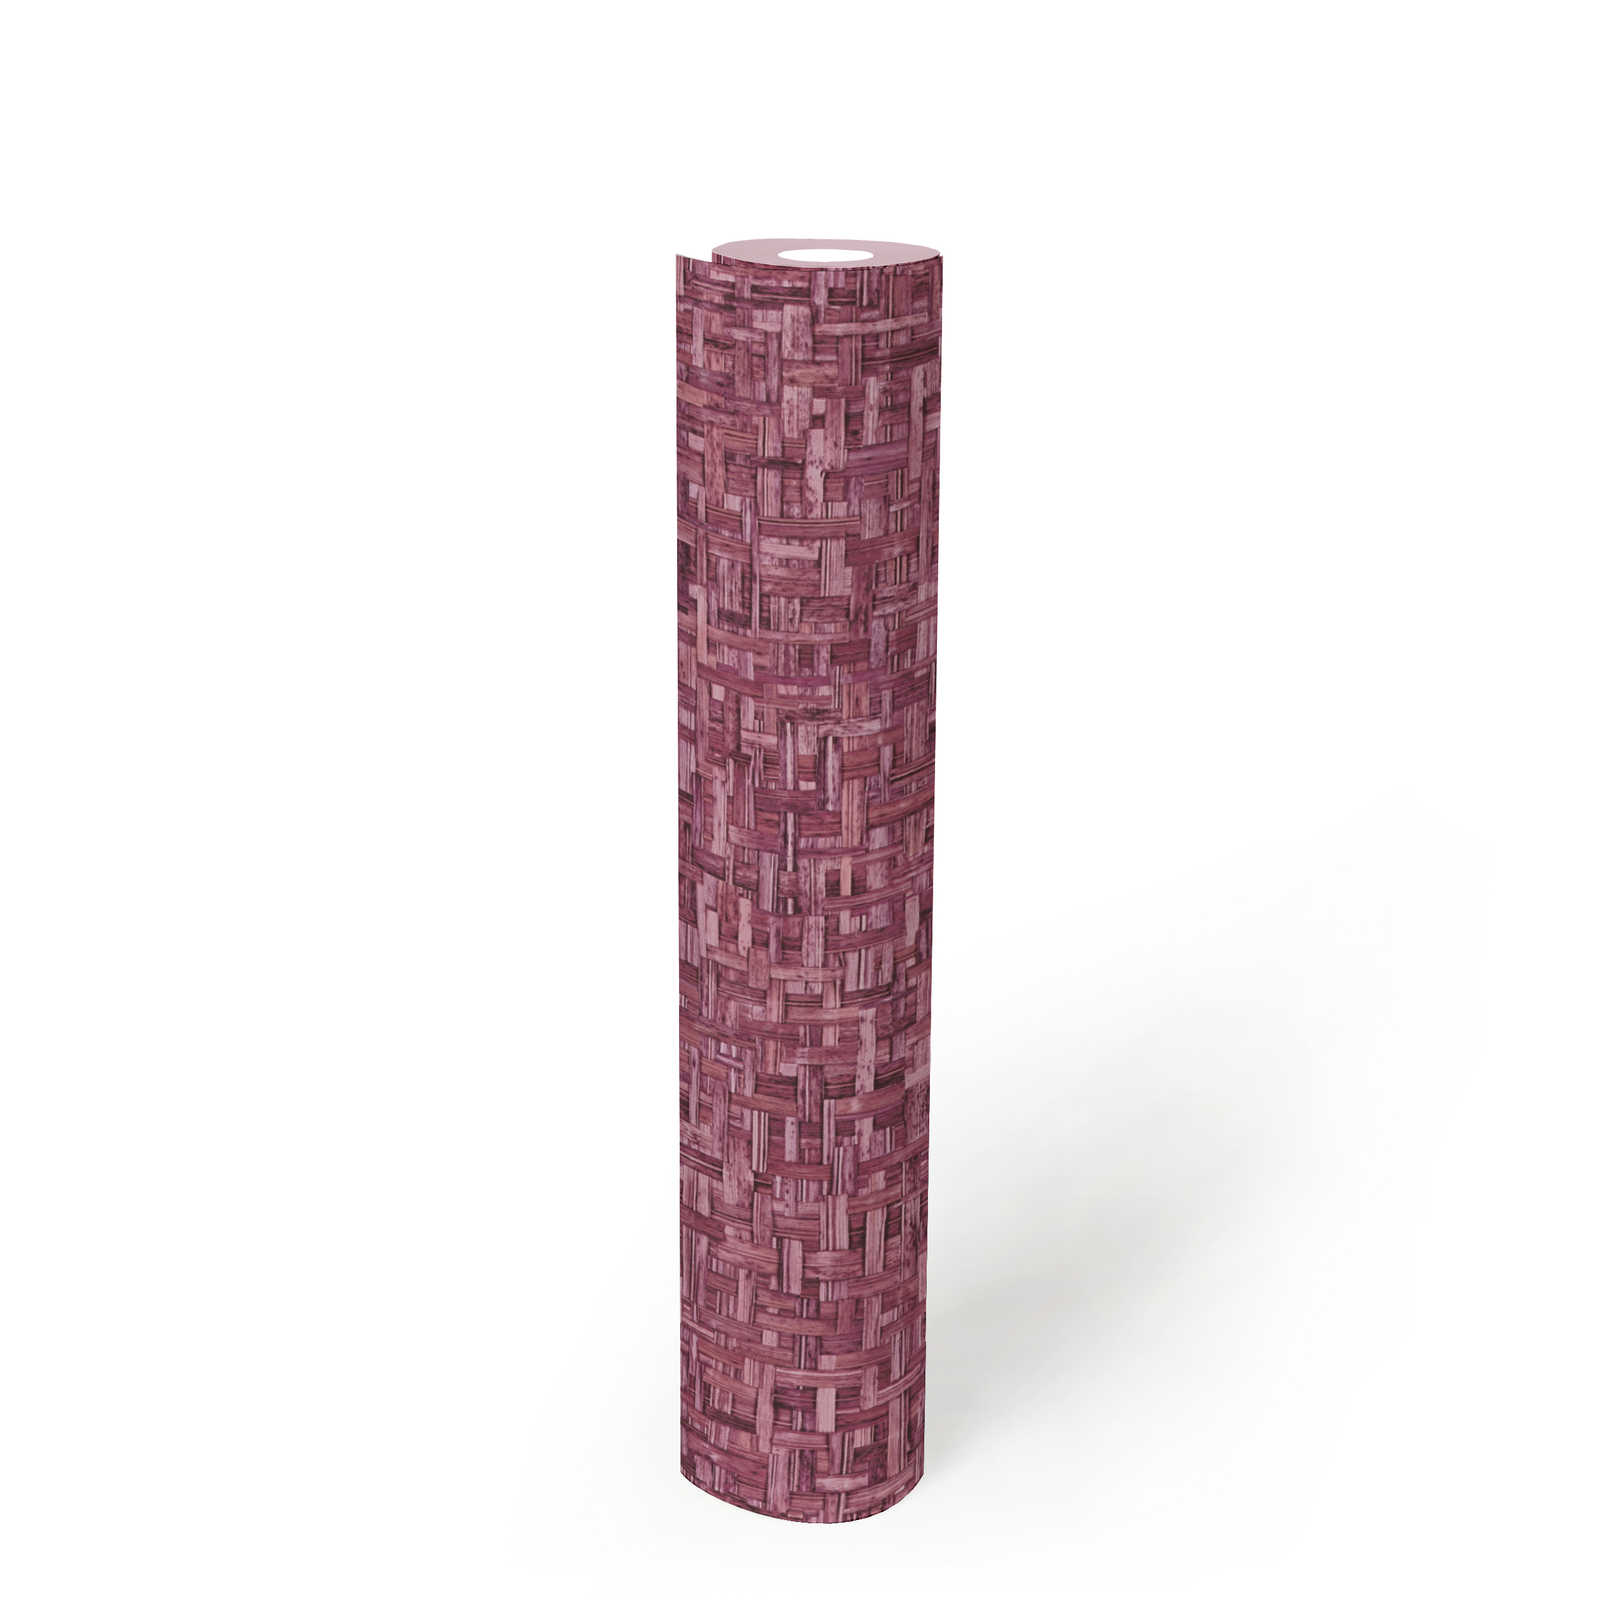             Papier peint intissé lilas avec motif tressé & dessin structuré - rose, rouge
        